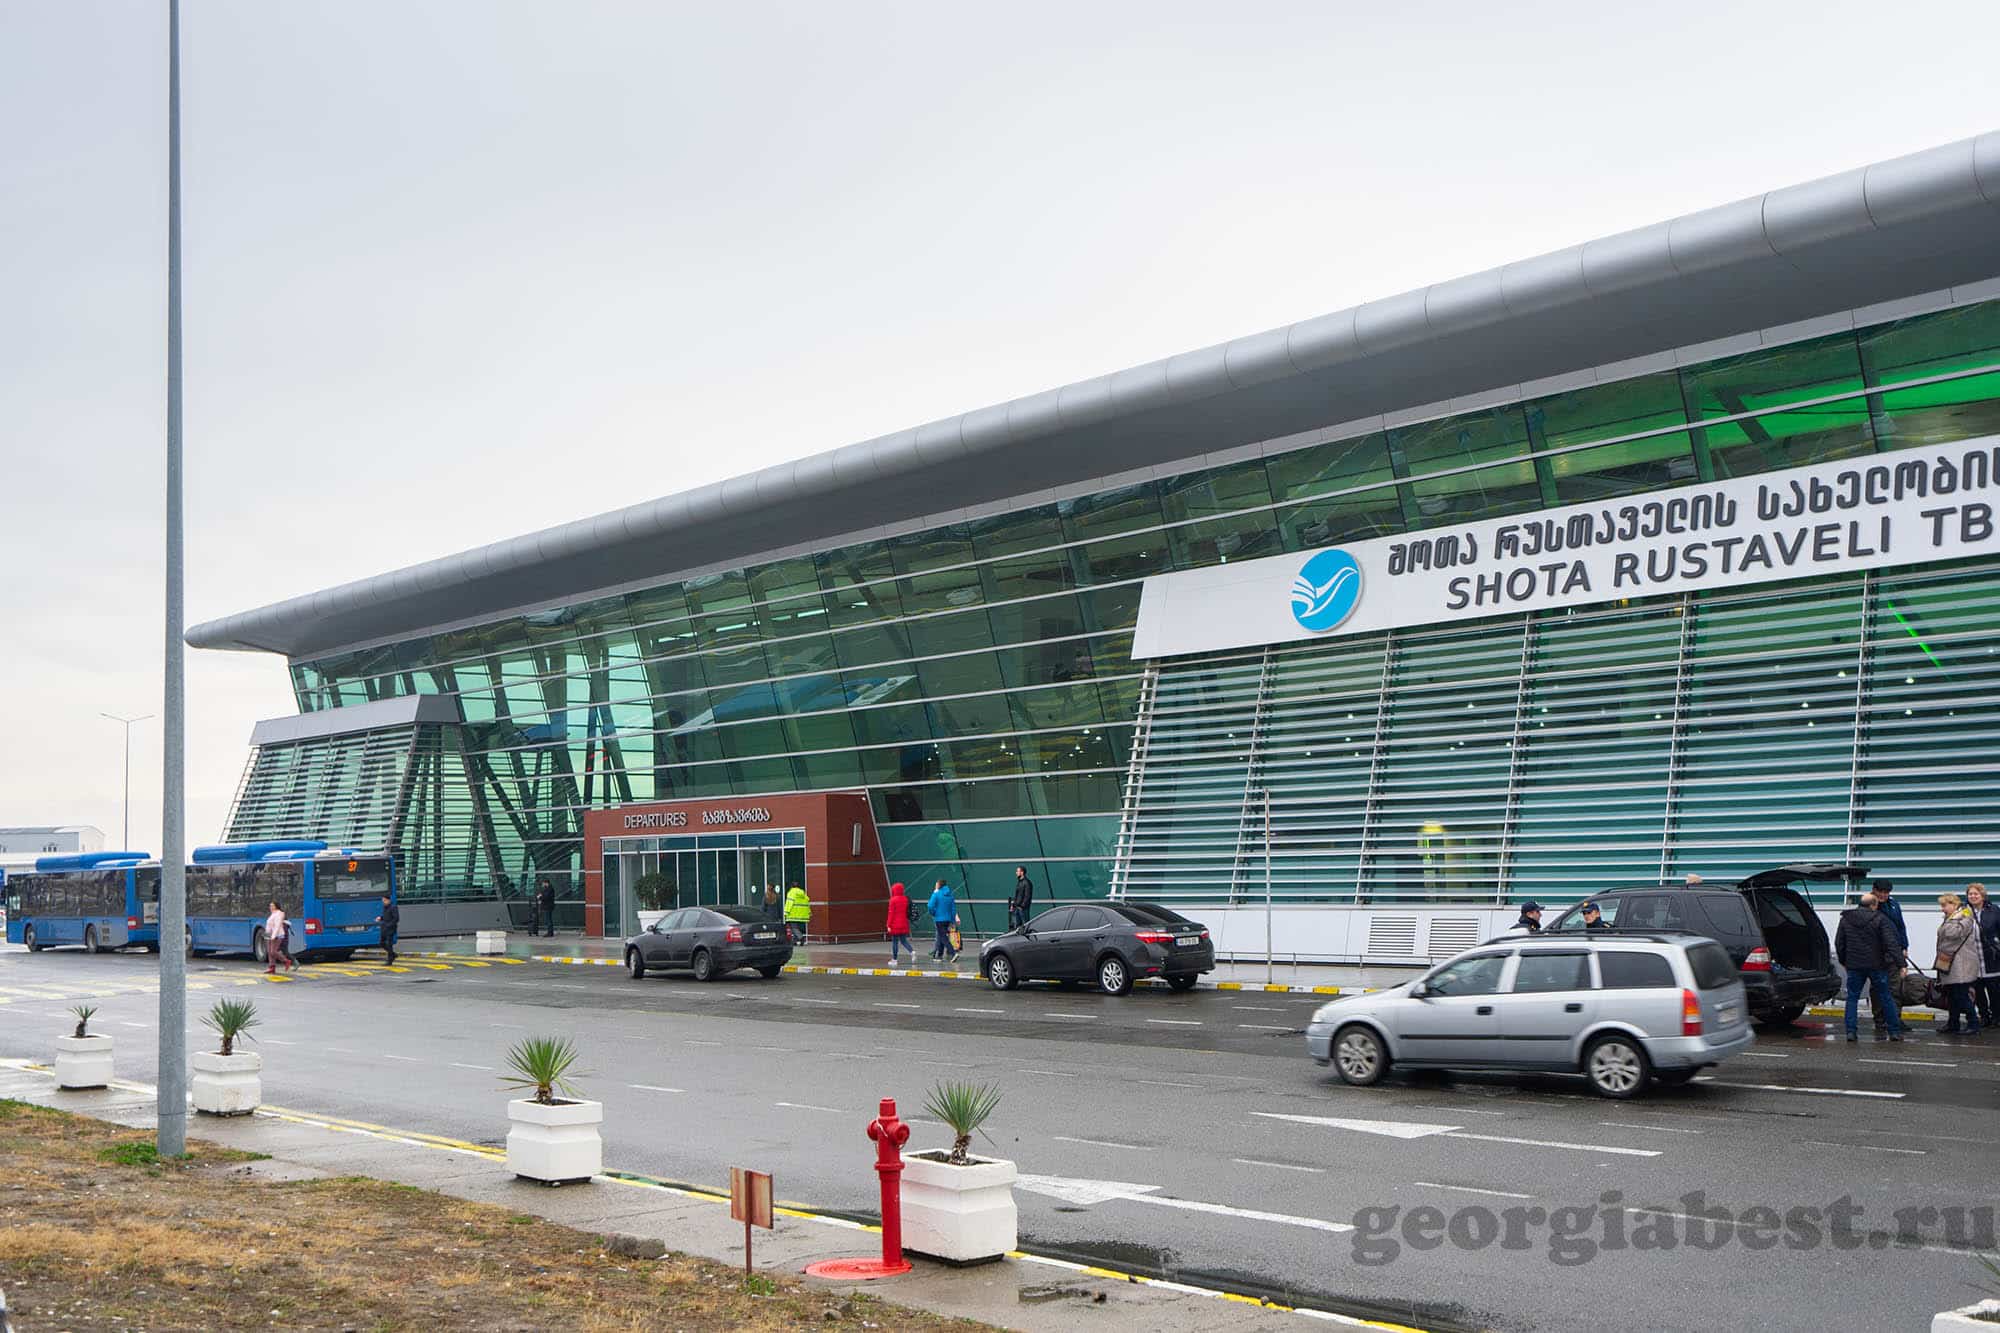 Аэропорт тбилиси обмен валют cardingboard.net отзывы